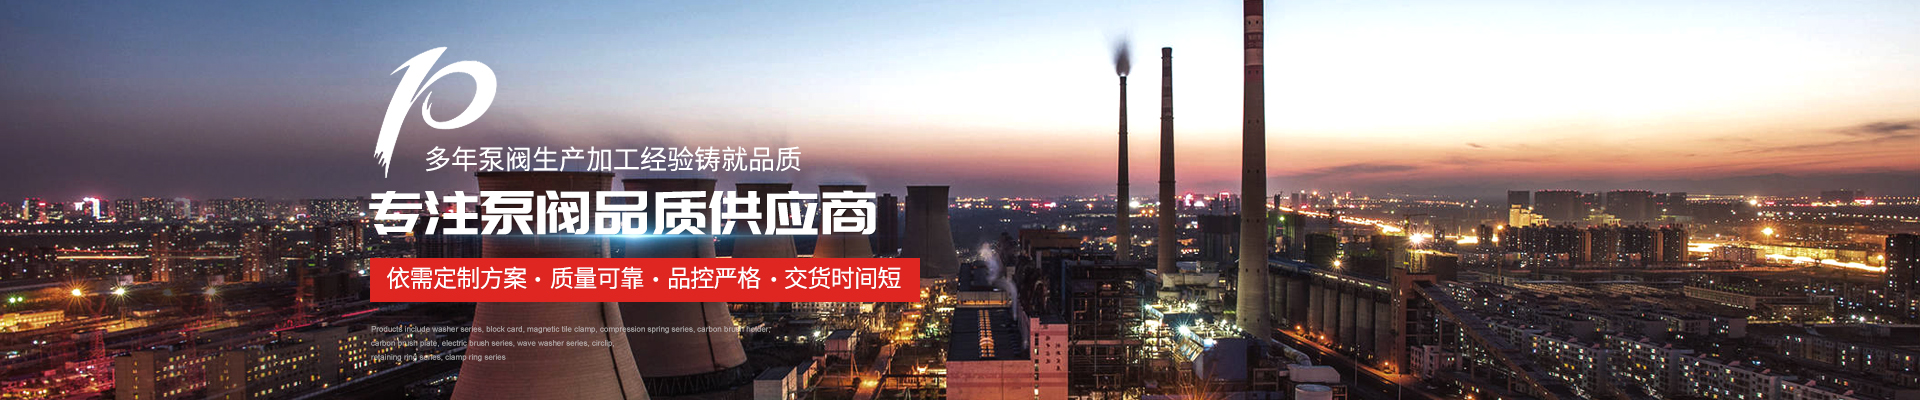  - 上海高適泵閥有限公司